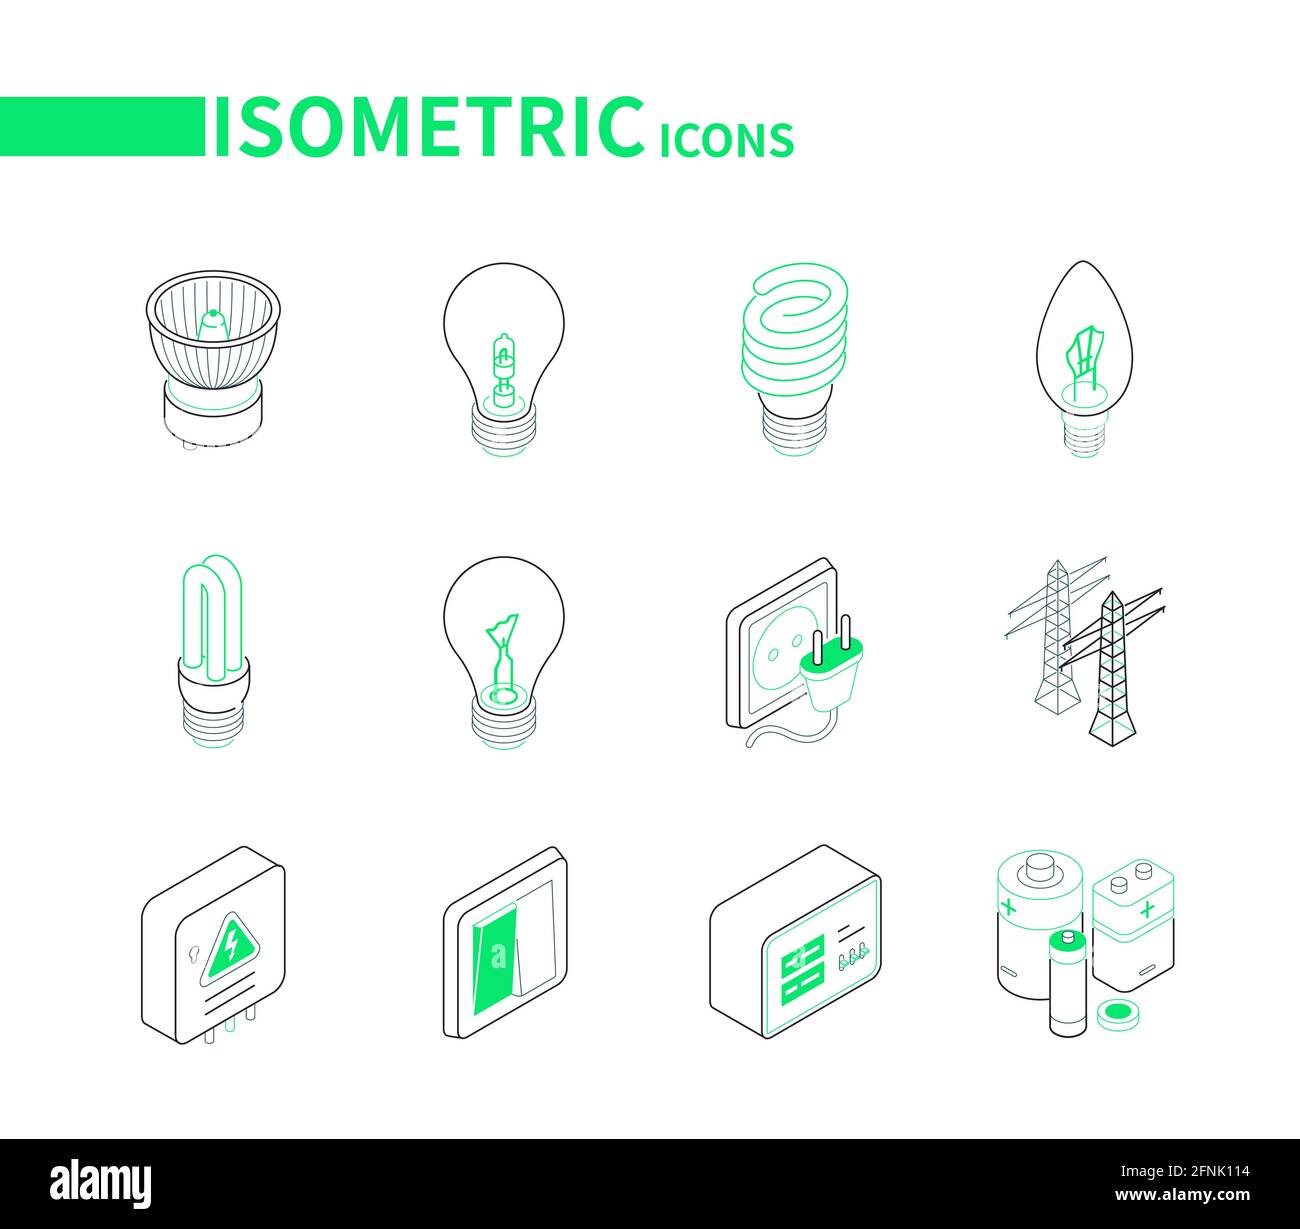 Alimentazioni elettriche - Set di icone isometriche moderne e colorate. Apparecchiature di illuminazione e idea di elettricità. Lampade alogene, fluorescenti, a incandescenza, a LED Illustrazione Vettoriale